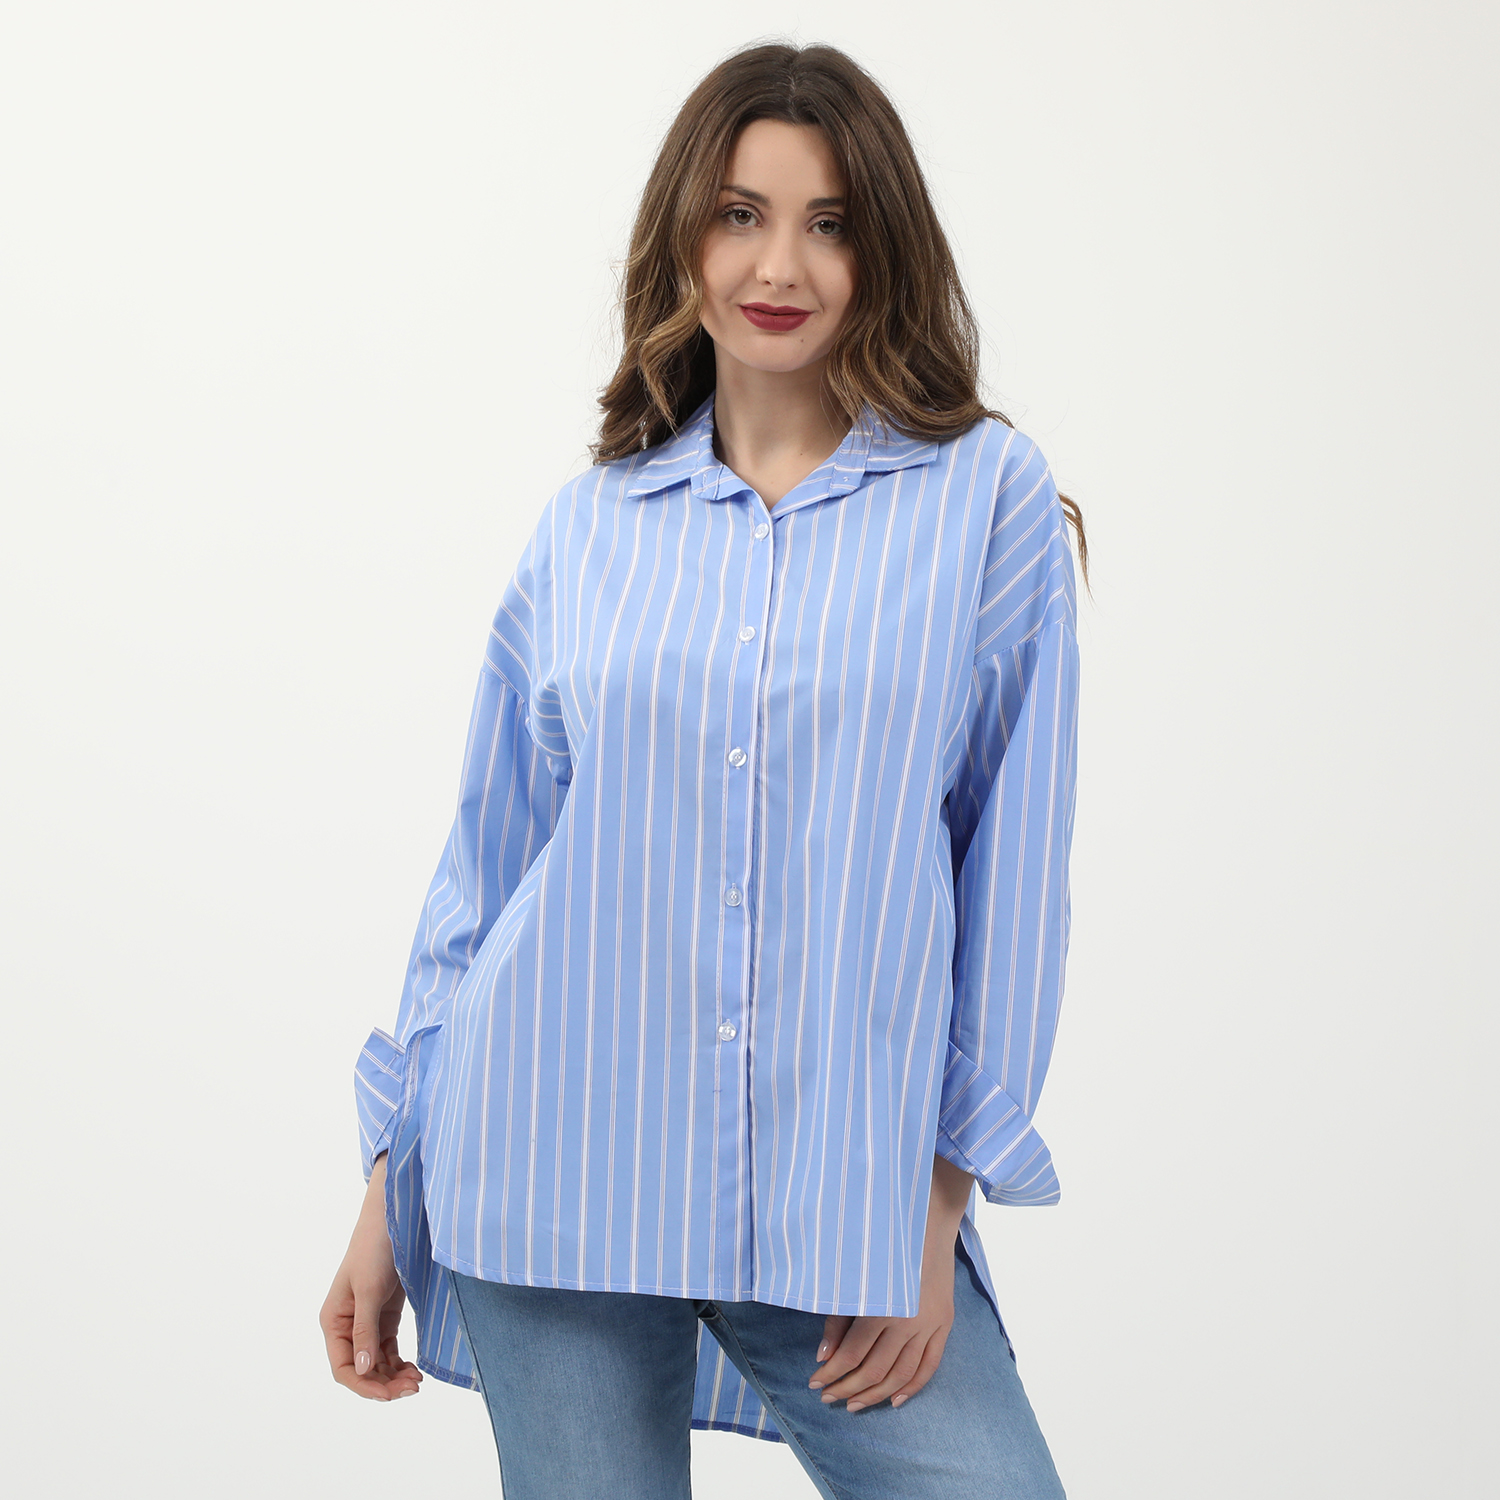 Γυναικεία/Ρούχα/Πουκάμισα/Μακρυμάνικα ATTRATTIVO - Γυναικείο μακρύ πουκάμισο ATTRATTIVO ριγέ μπλε λευκό